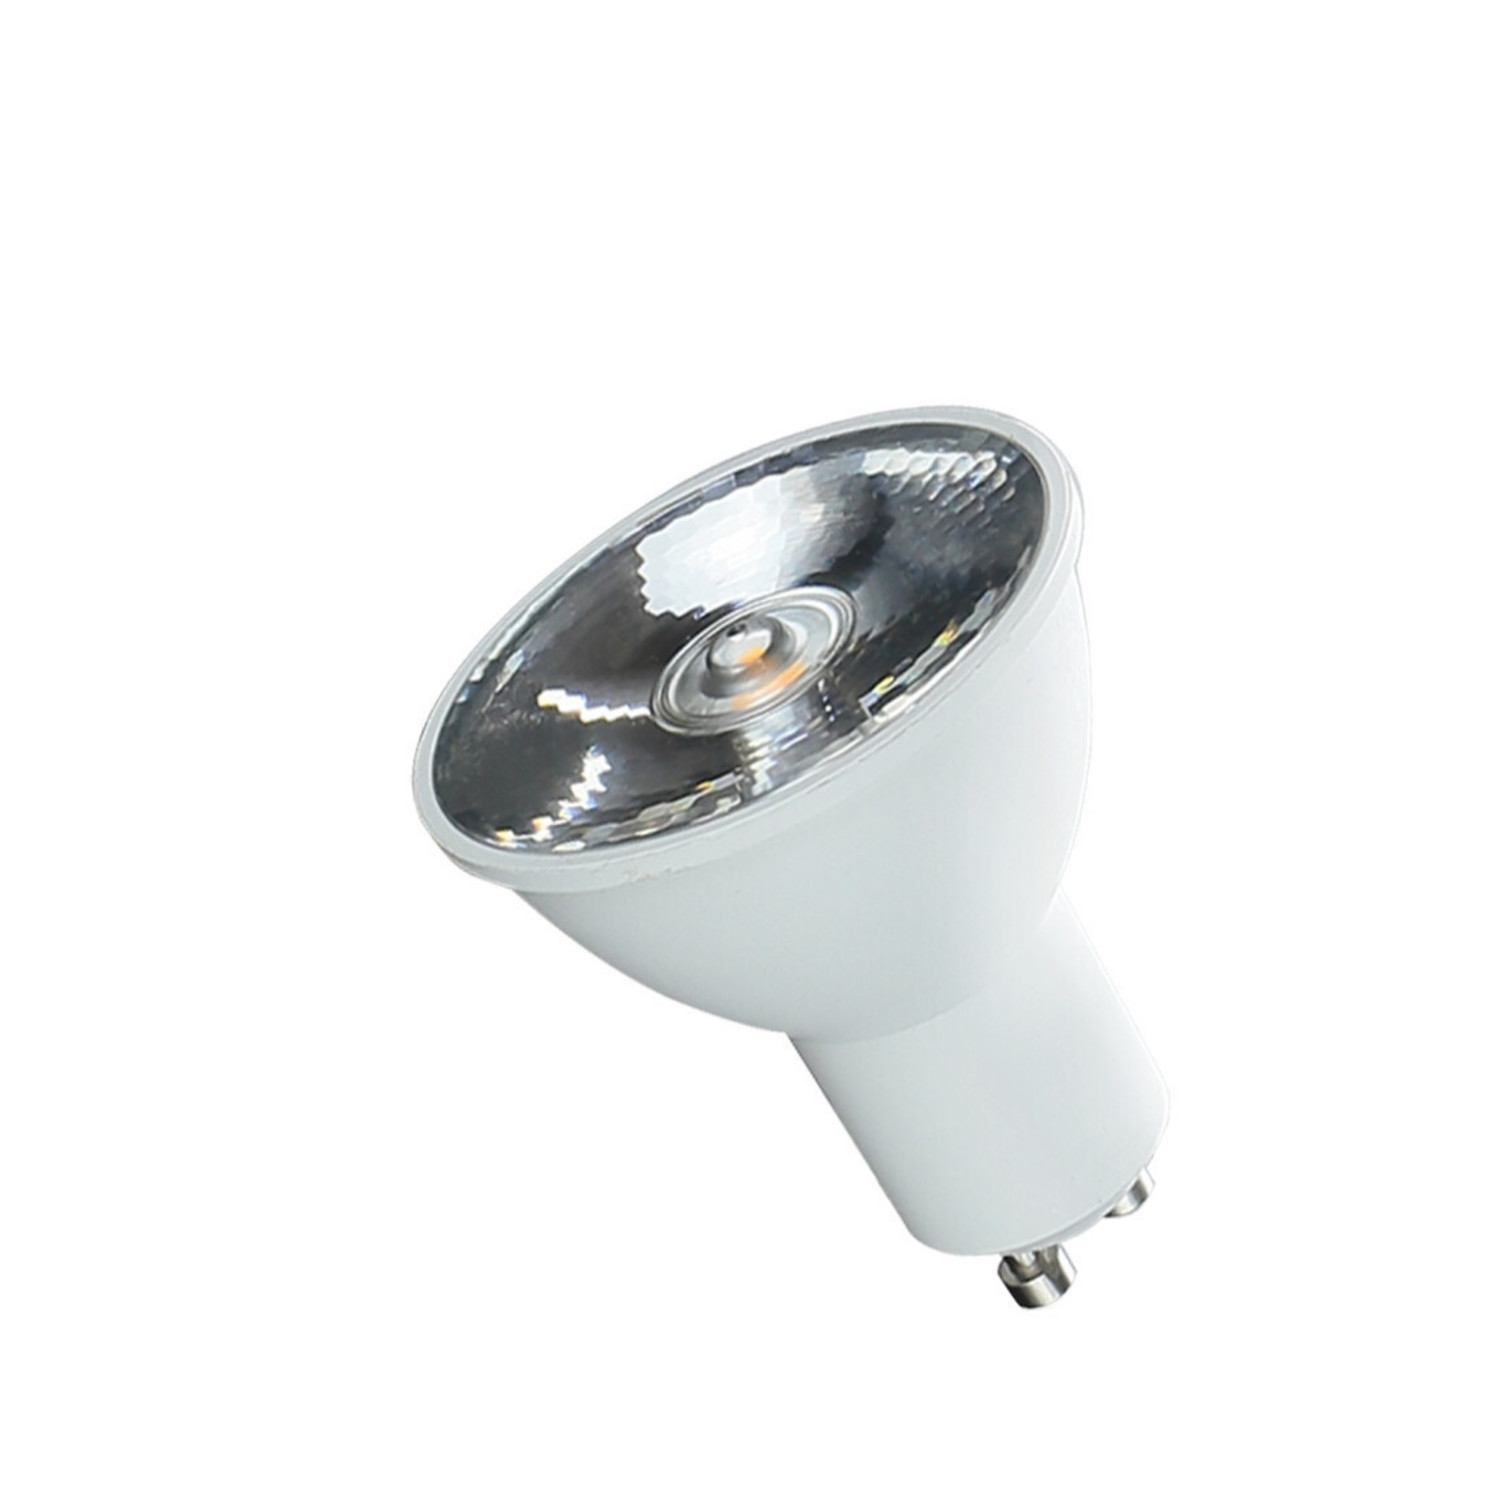 Overlappen Dhr Ontwaken LED spot GU10 - 6W vervangt 40W - 4000K helder wit licht - 10°  lichtspreiding - Ledlichtdiscounter.nl